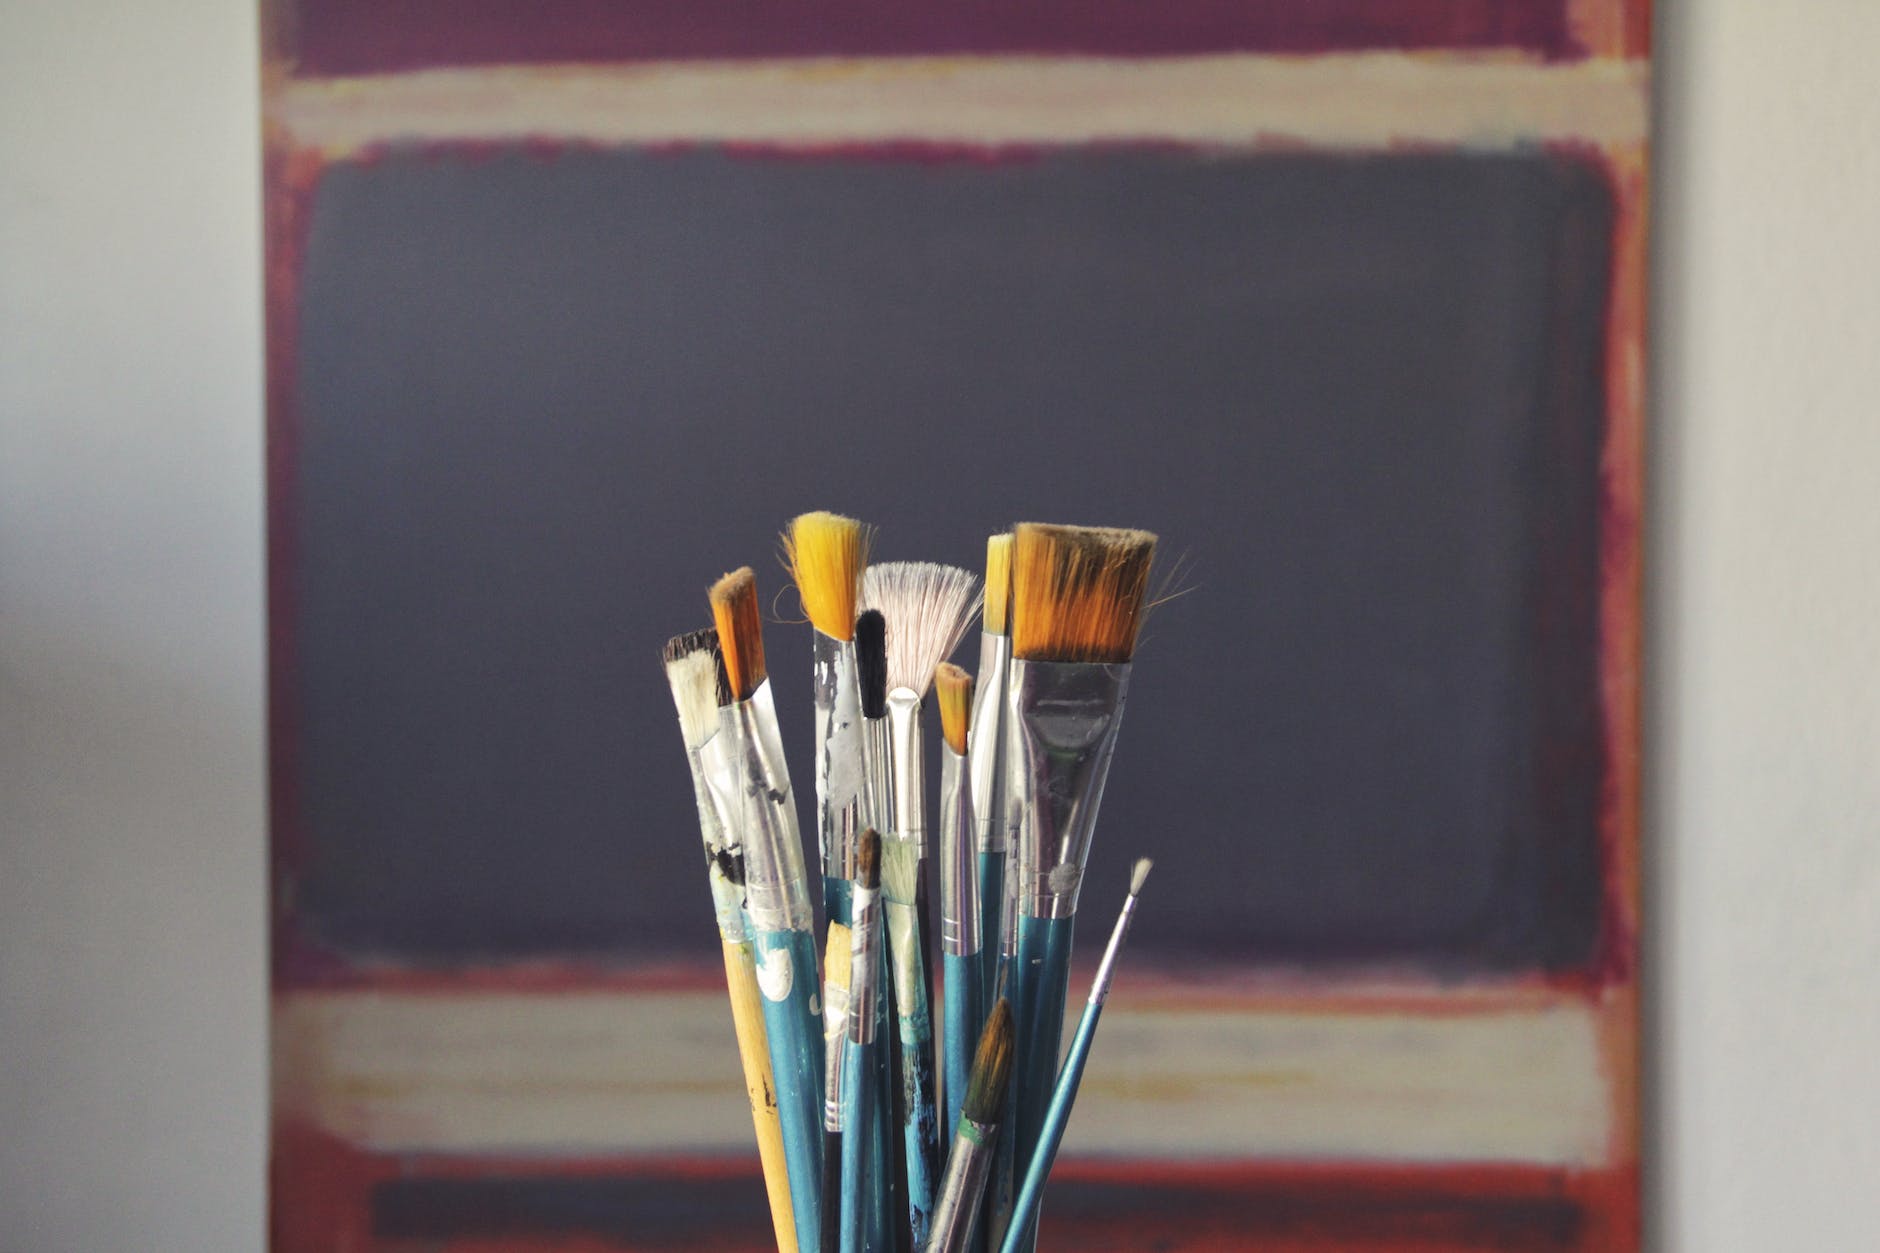 Pędzle do malowania symbolizujące możliwości kreatywne kompetencji człowieka będące etykietą zakładki poświęconej ofercie edukacyjnej w zakresie inteligencji emocjonalnej i kompetencji komunikacyjnych. Photo by Pixabay on Pexels.com